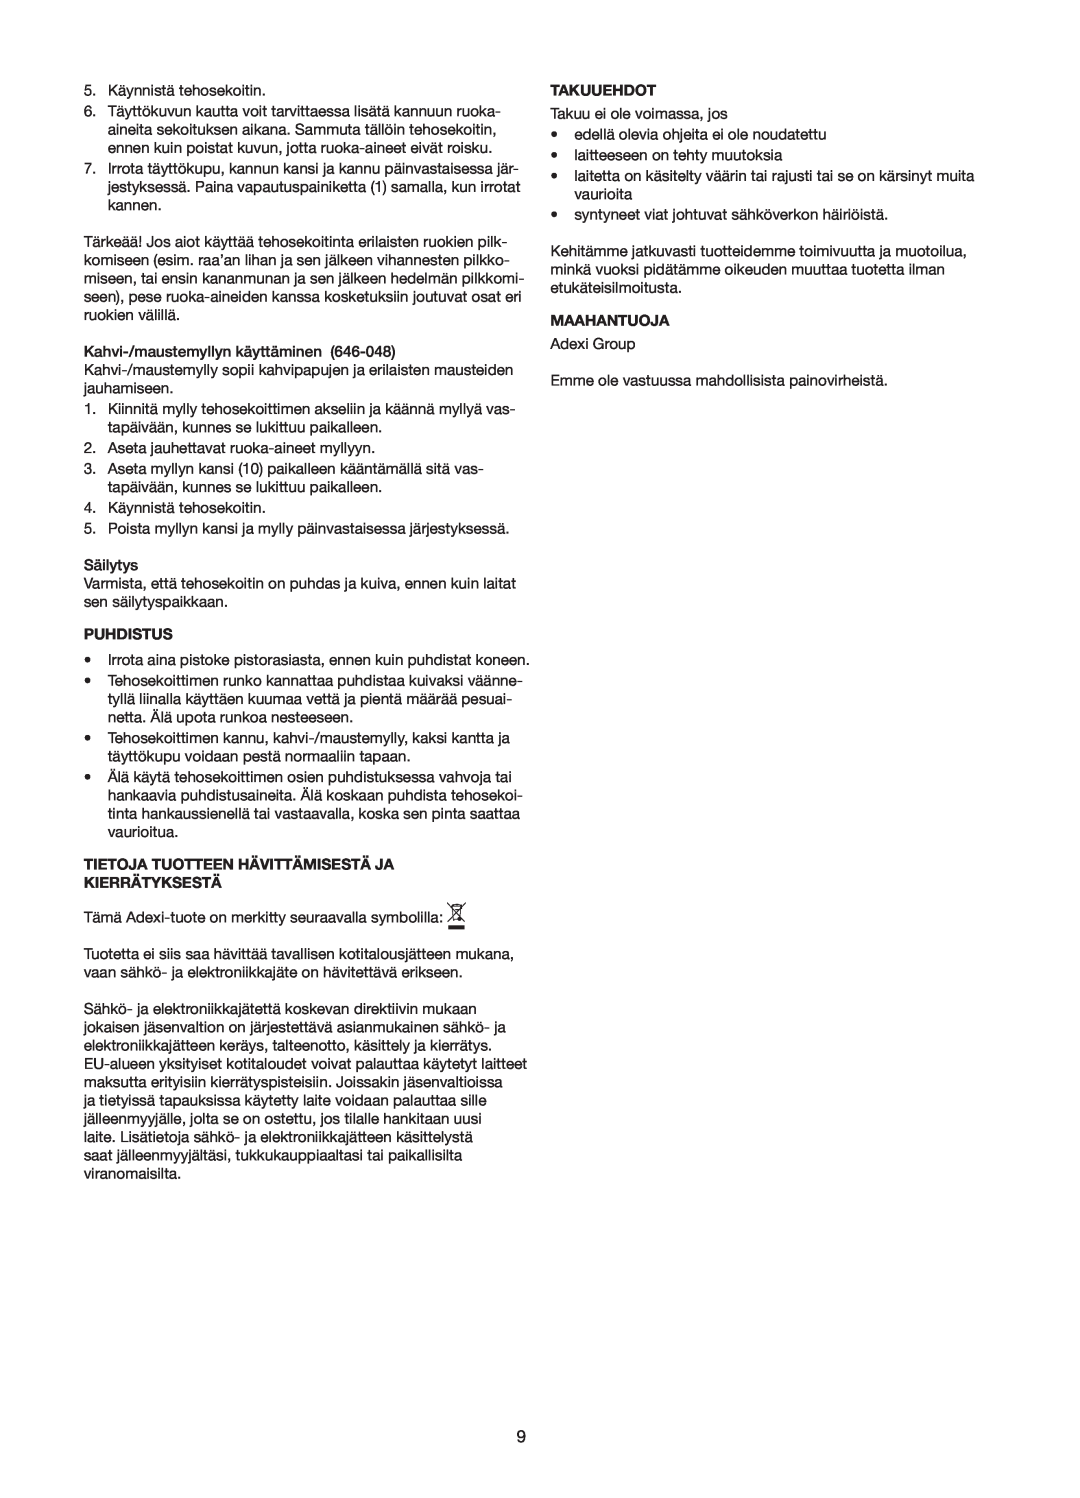 Melissa 646-047/48 manual Puhdistus, Tietoja Tuotteen Hävittämisestä Ja Kierrätyksestä, Takuuehdot, Maahantuoja 